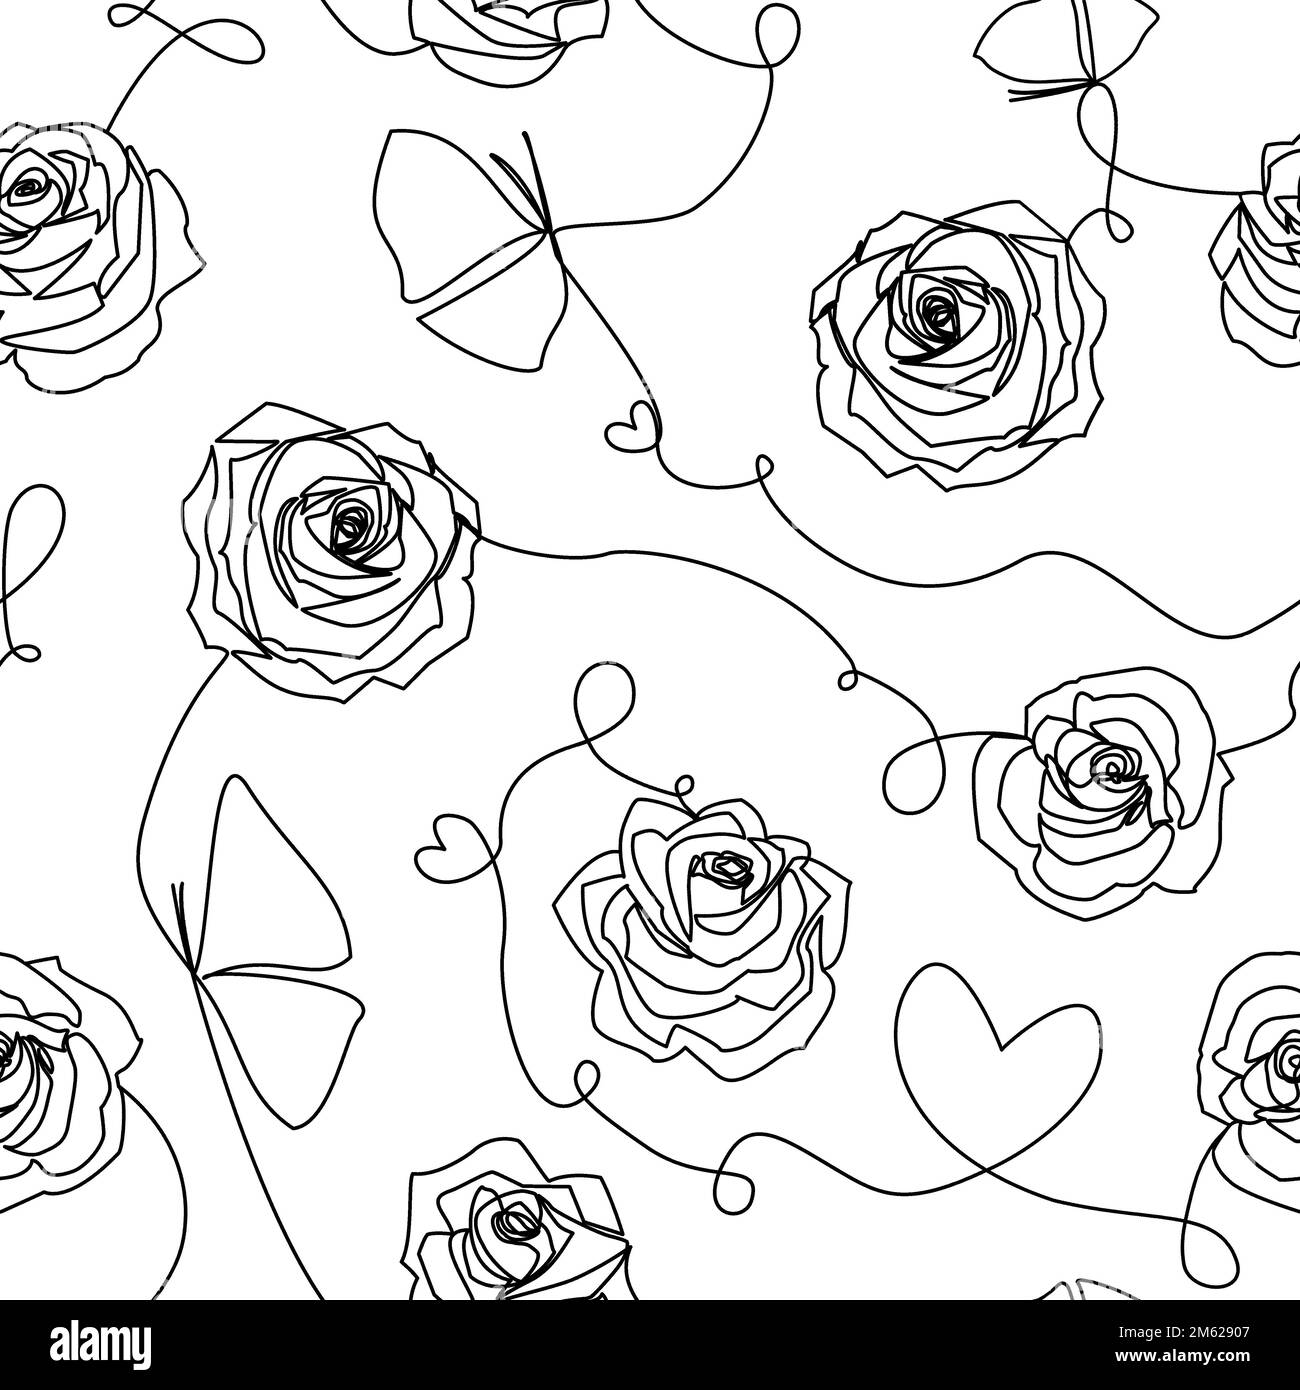 Einzeilige Schwarzweiß-Zeichnung abstrakter zeitgenössischer Kunst. Modernes, nahtloses Muster mit Rosen, Blumen, Herzen, Schmetterlingen aus weißem, durchgehendem B Stockfoto